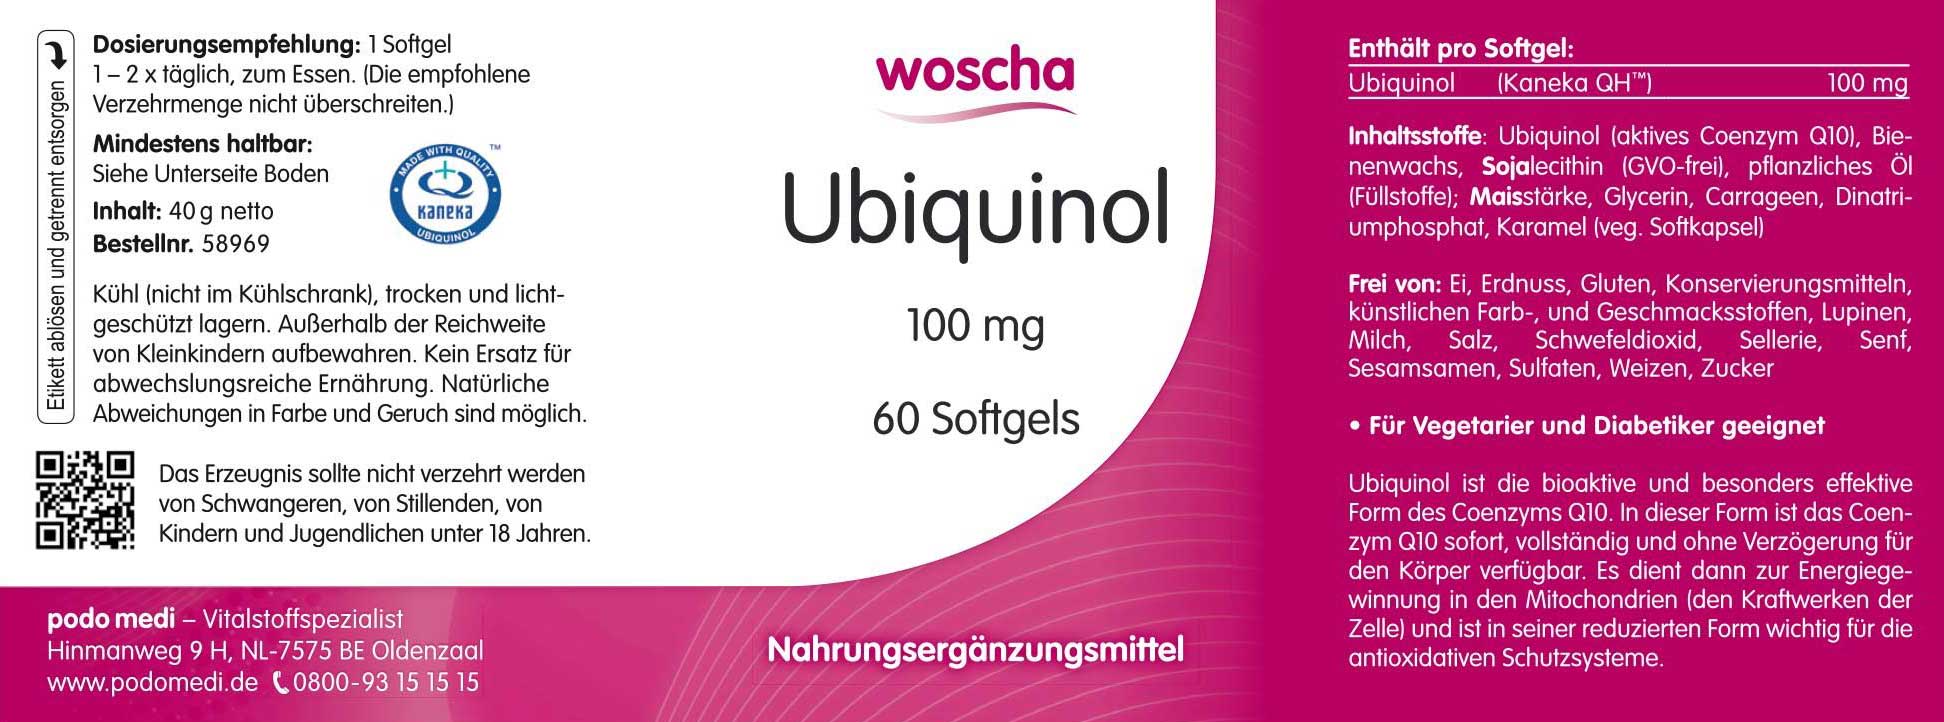 Woscha Ubiquinol 100 Milligramm von podo medi beinhaltet 60 Softgels Etikett